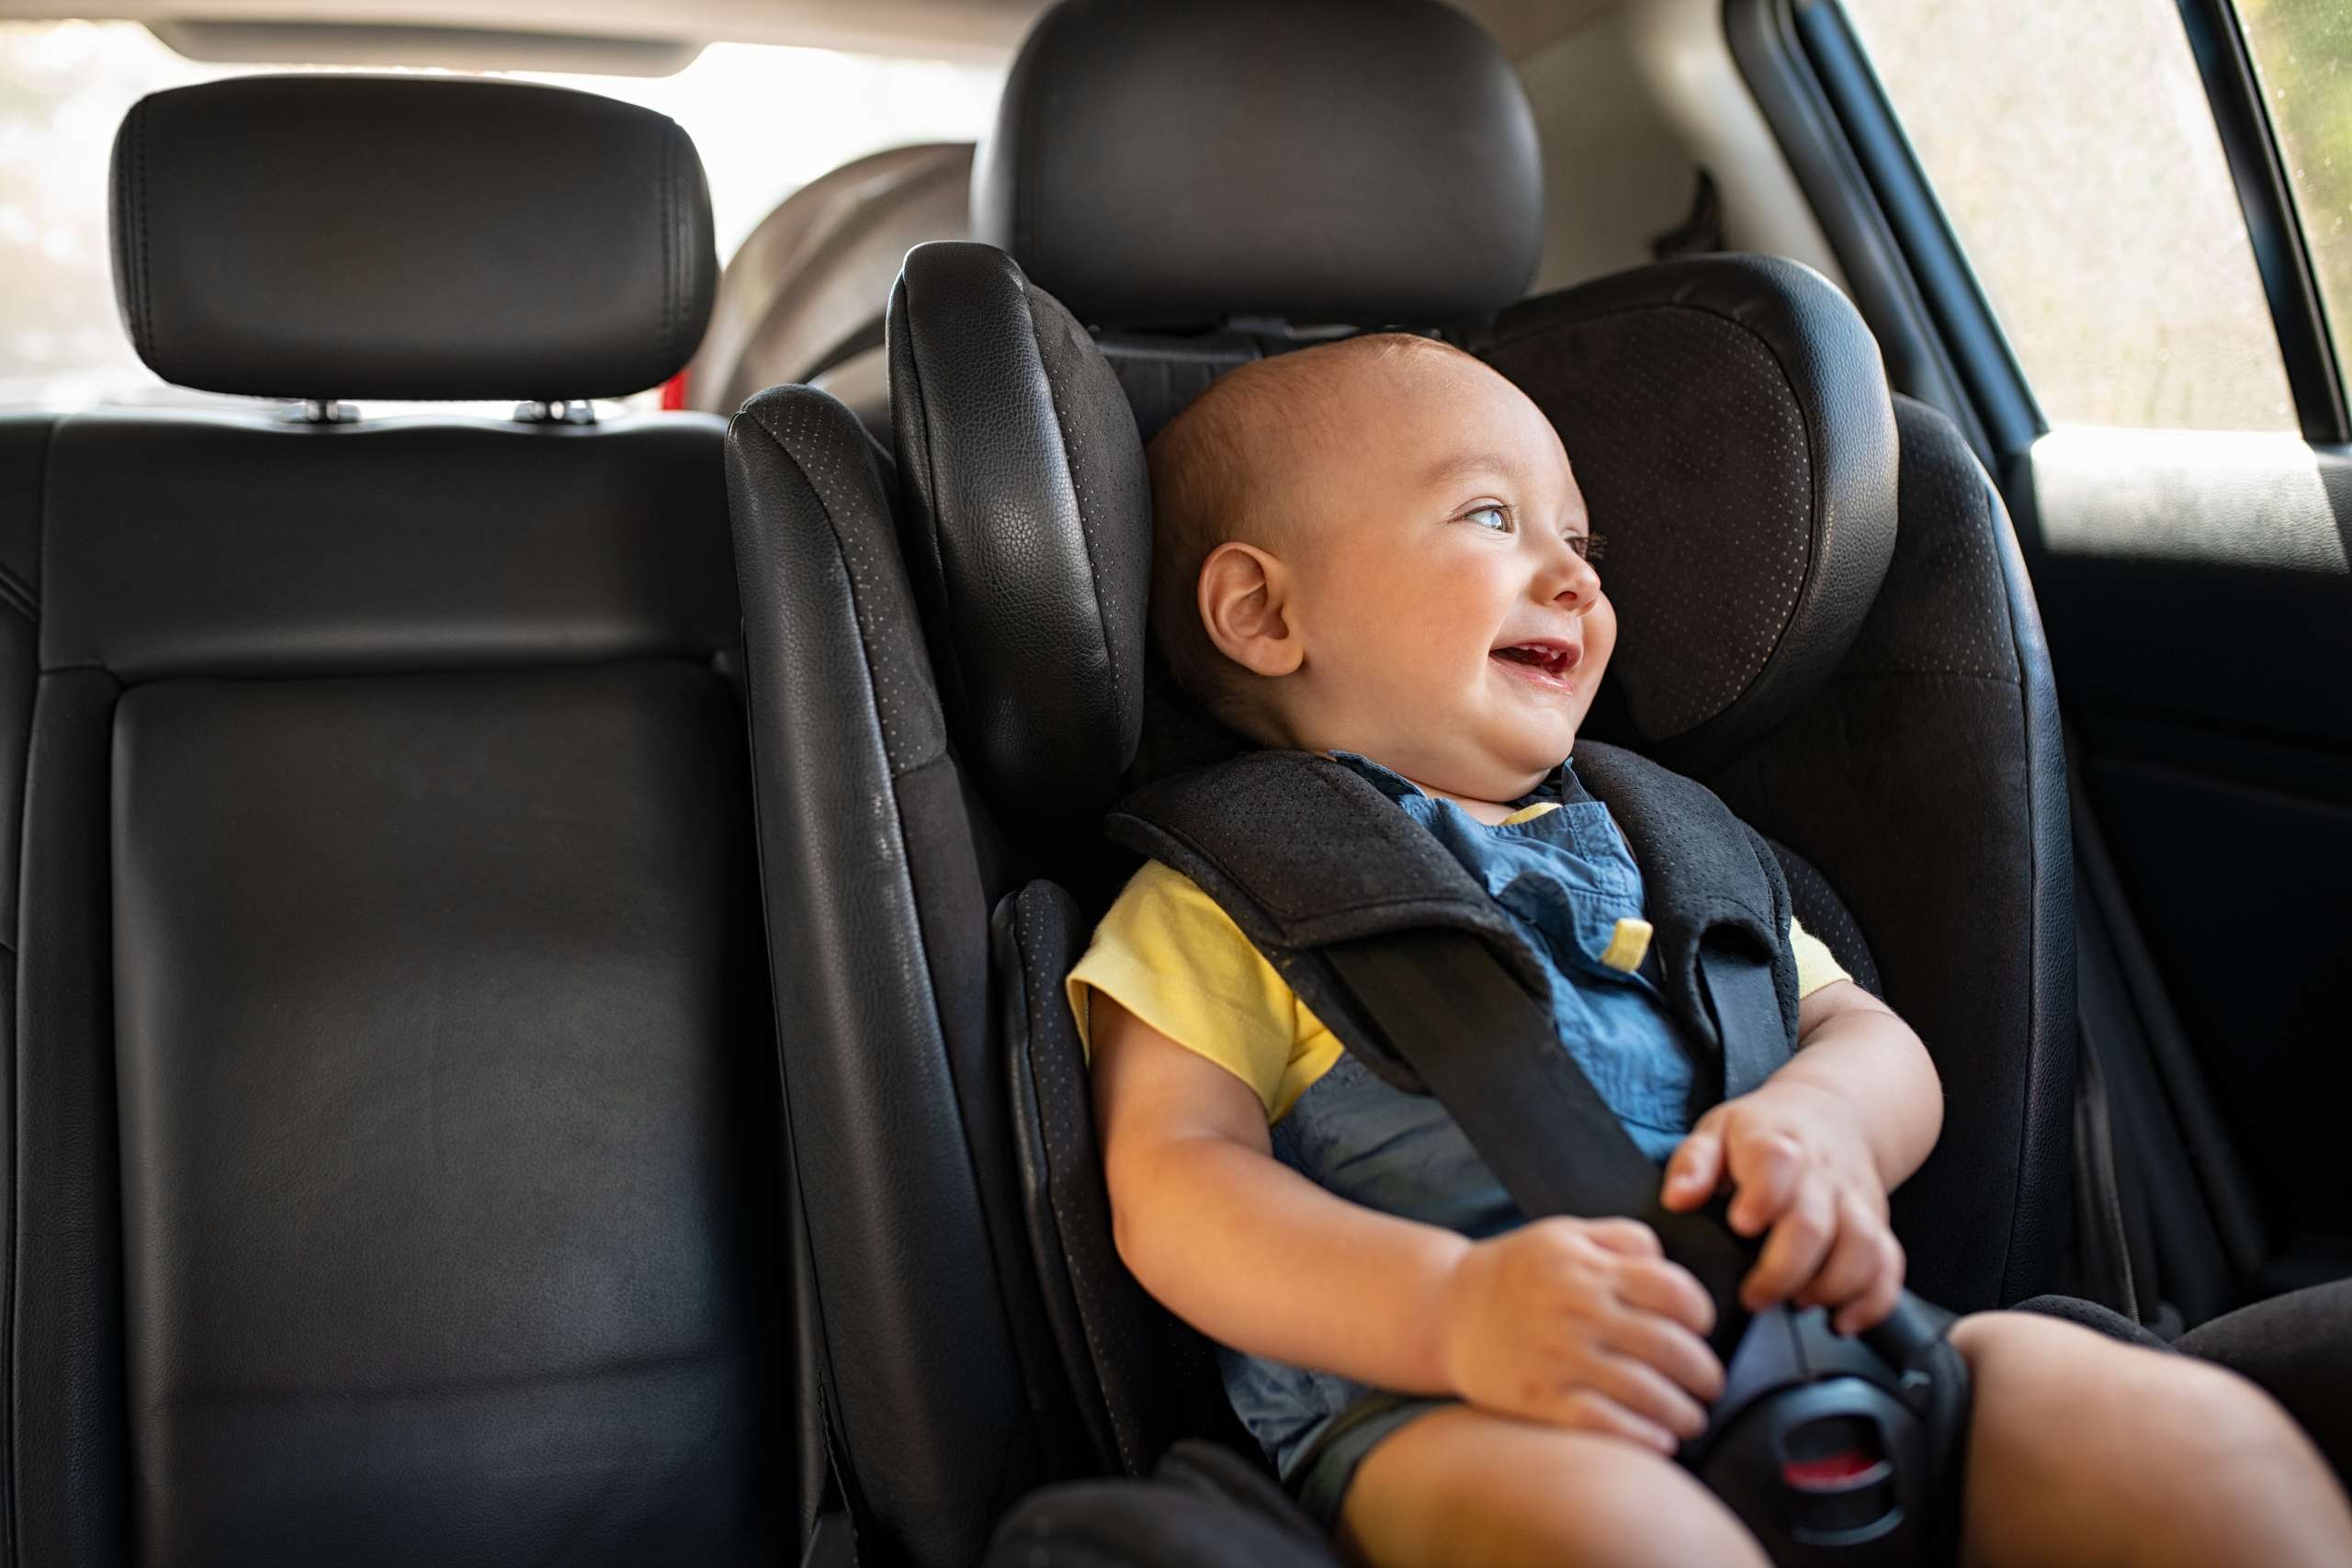 Toddler sitting in car during road trip